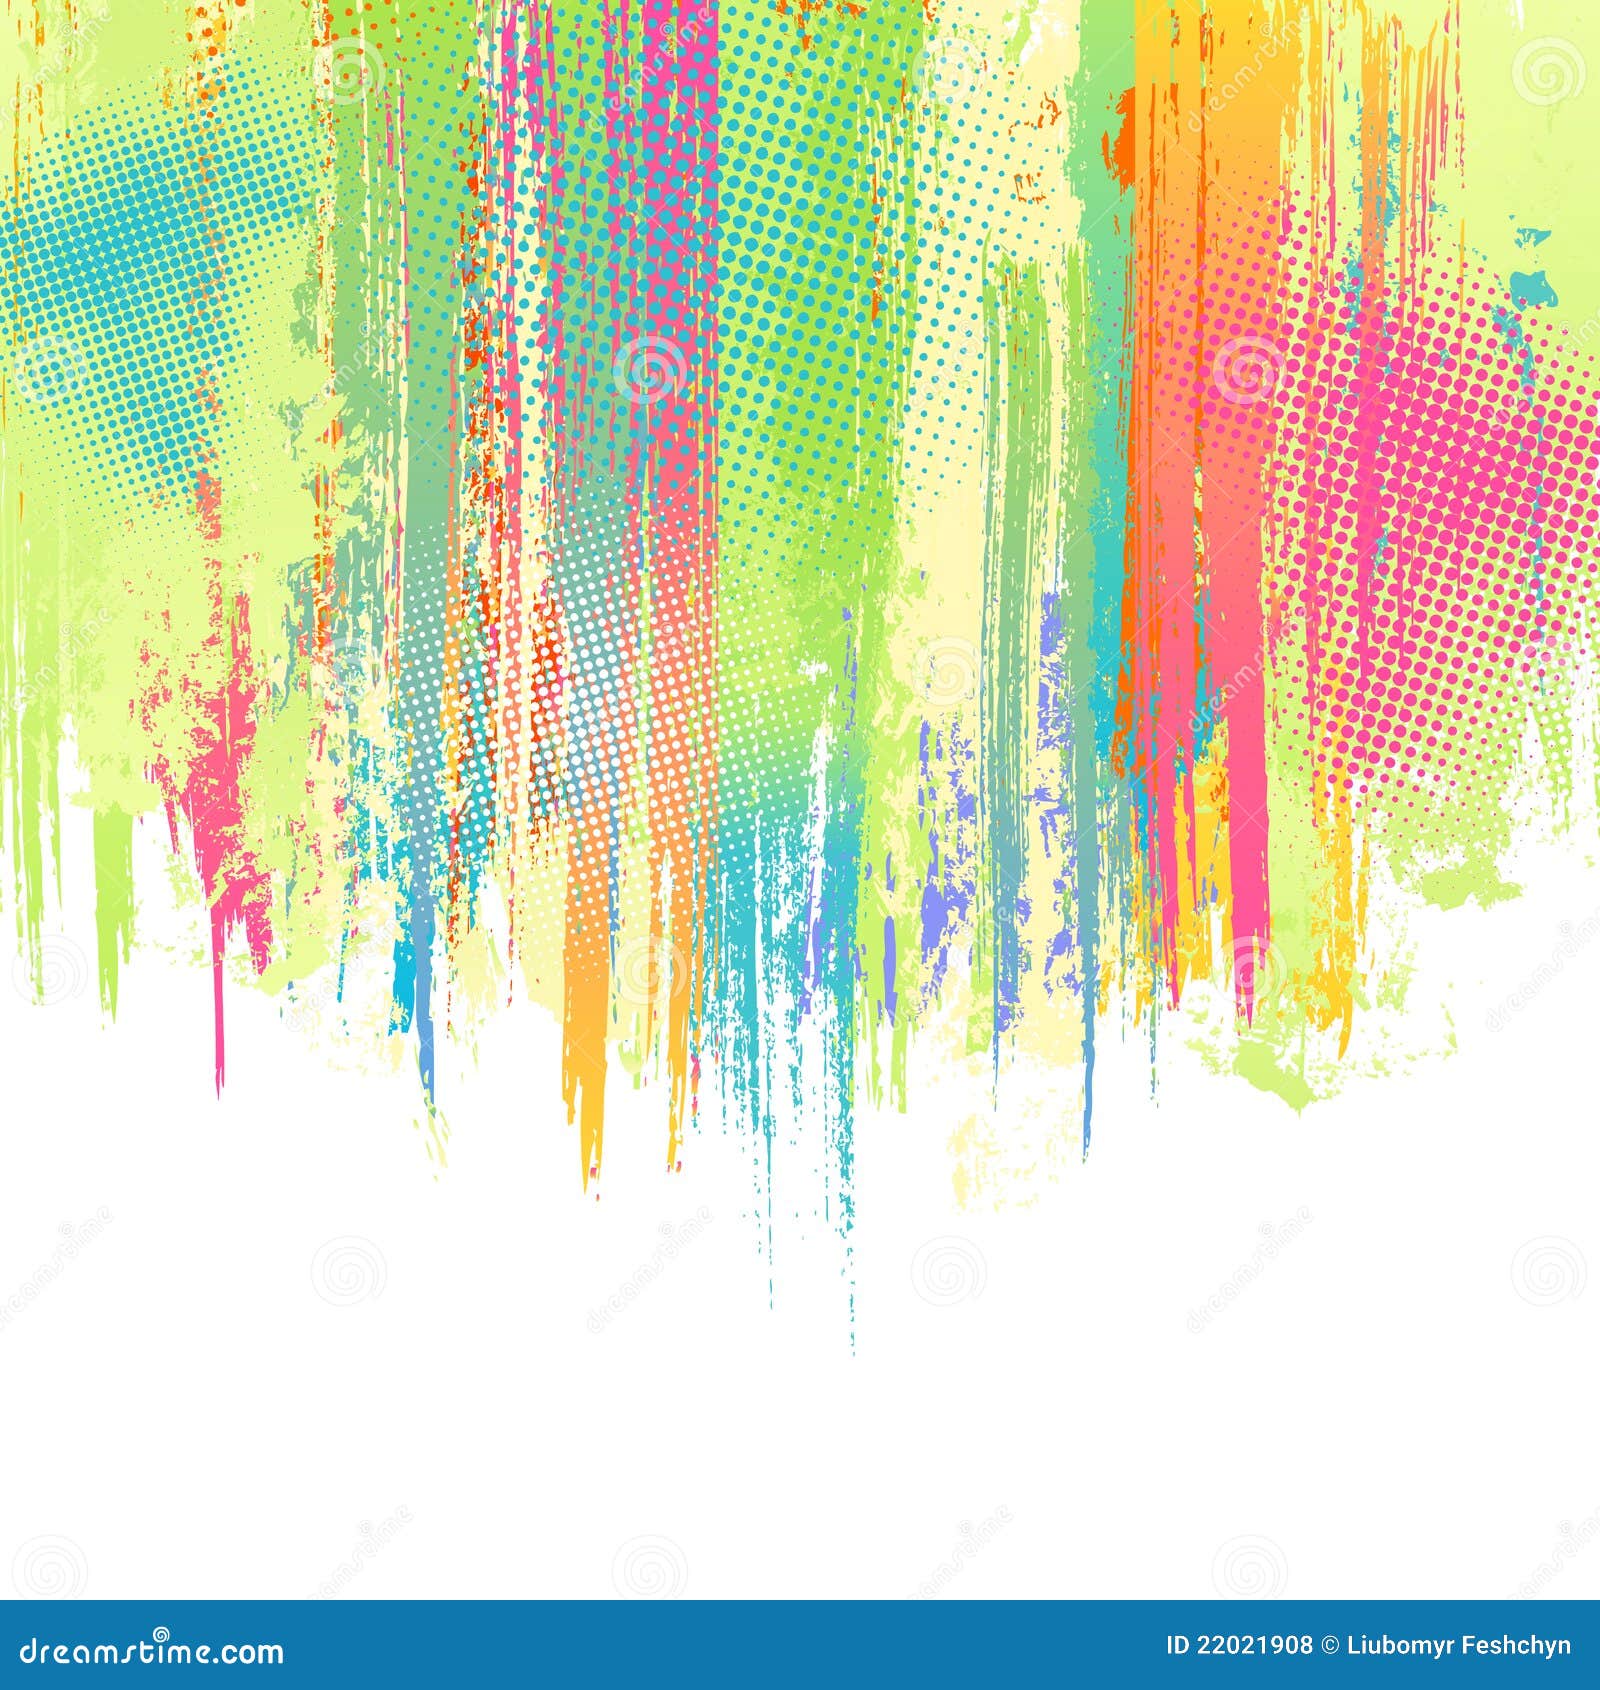 Microsoft Paint Paste Transparent Background